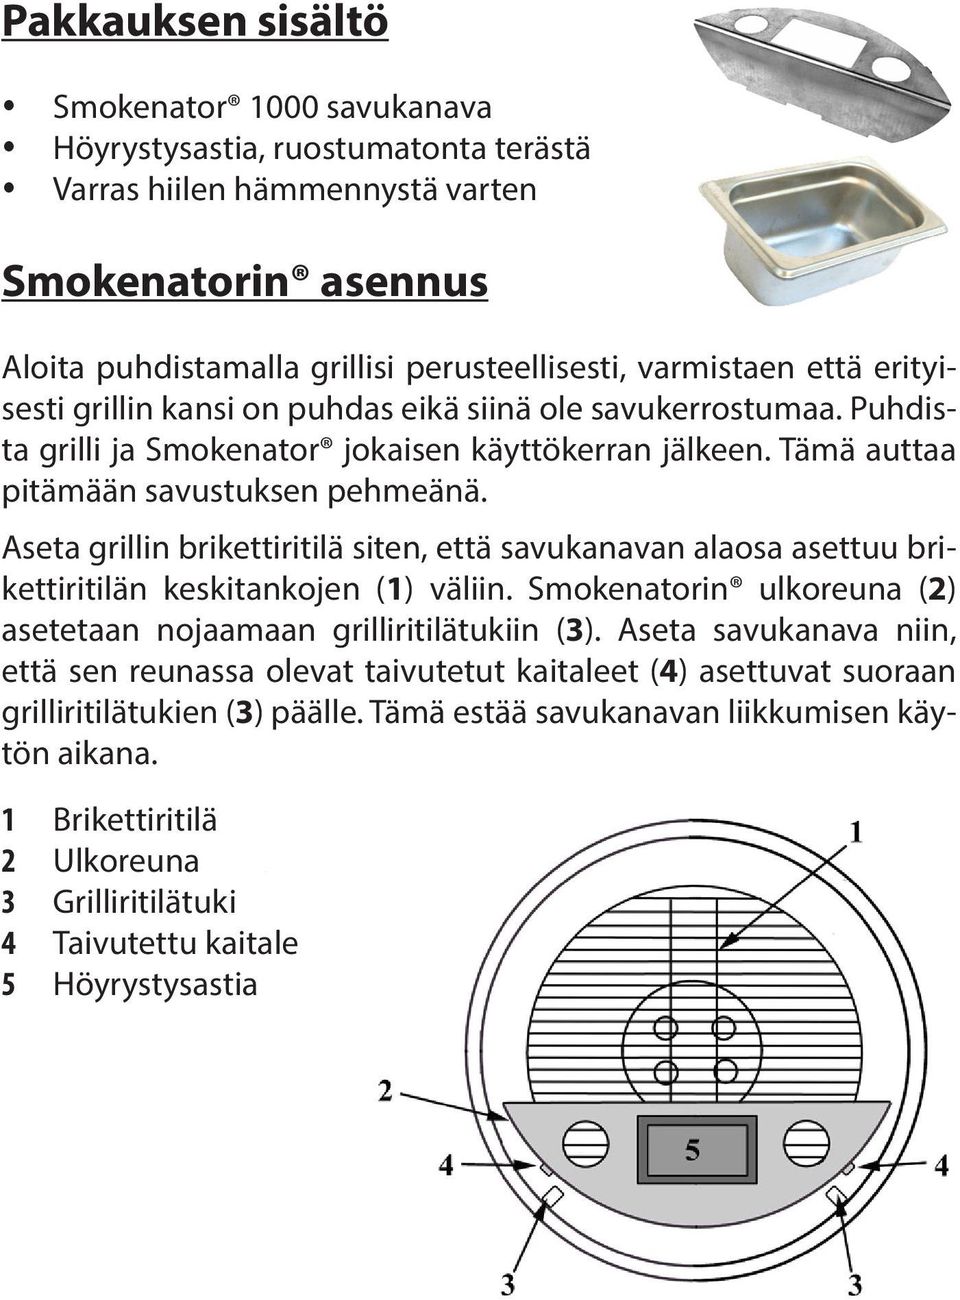 Aseta grillin brikettiritilä siten, että savukanavan alaosa asettuu brikettiritilän keskitankojen (1) väliin. Smokenatorin ulkoreuna (2) asetetaan nojaamaan grilliritilätukiin (3).